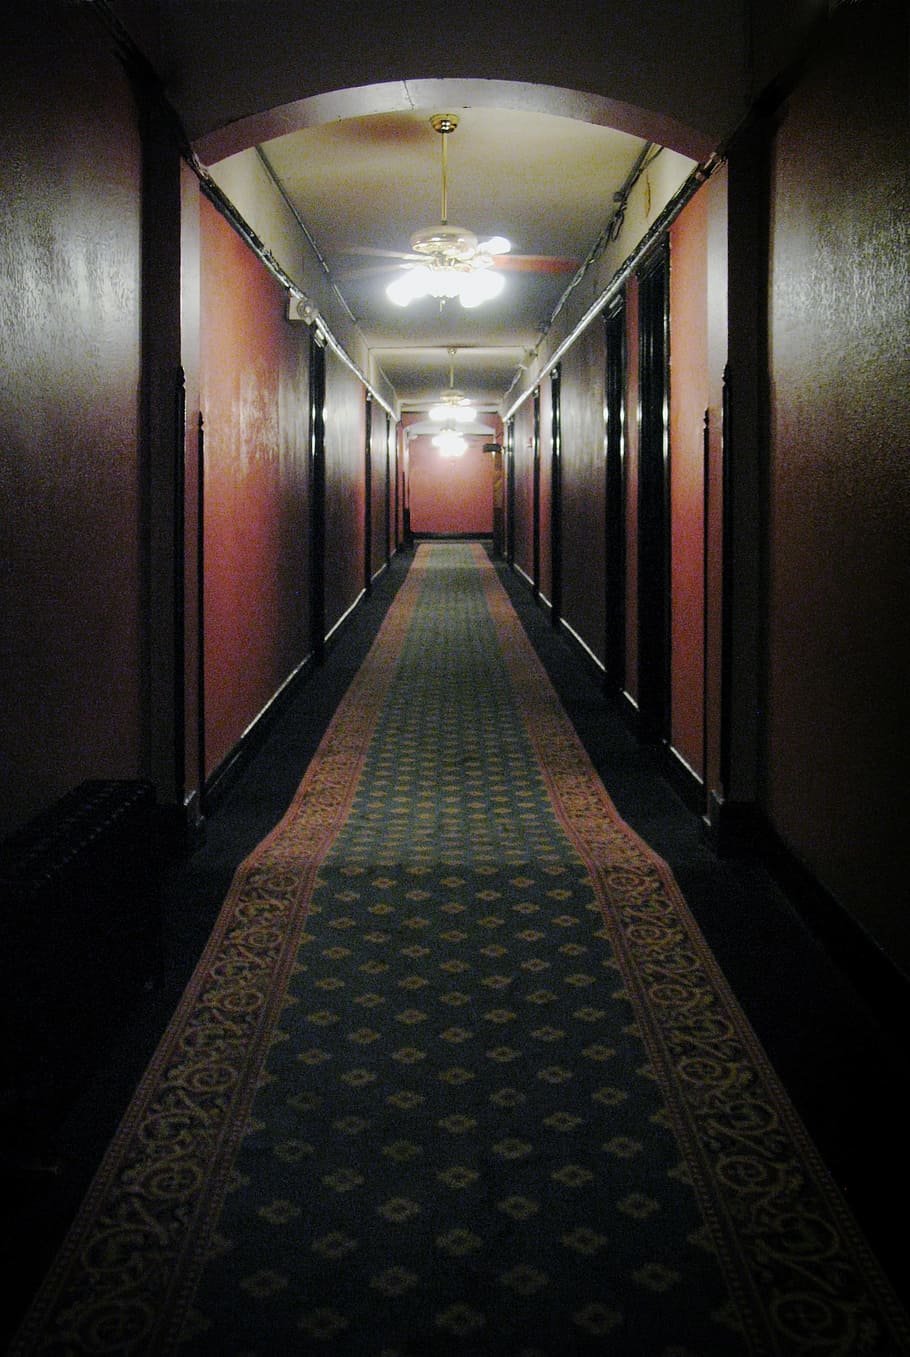 krem, hijau, karpet pelari, Hallway, Hotel, Spooky, Creepy, Haunted, hantu, vintage